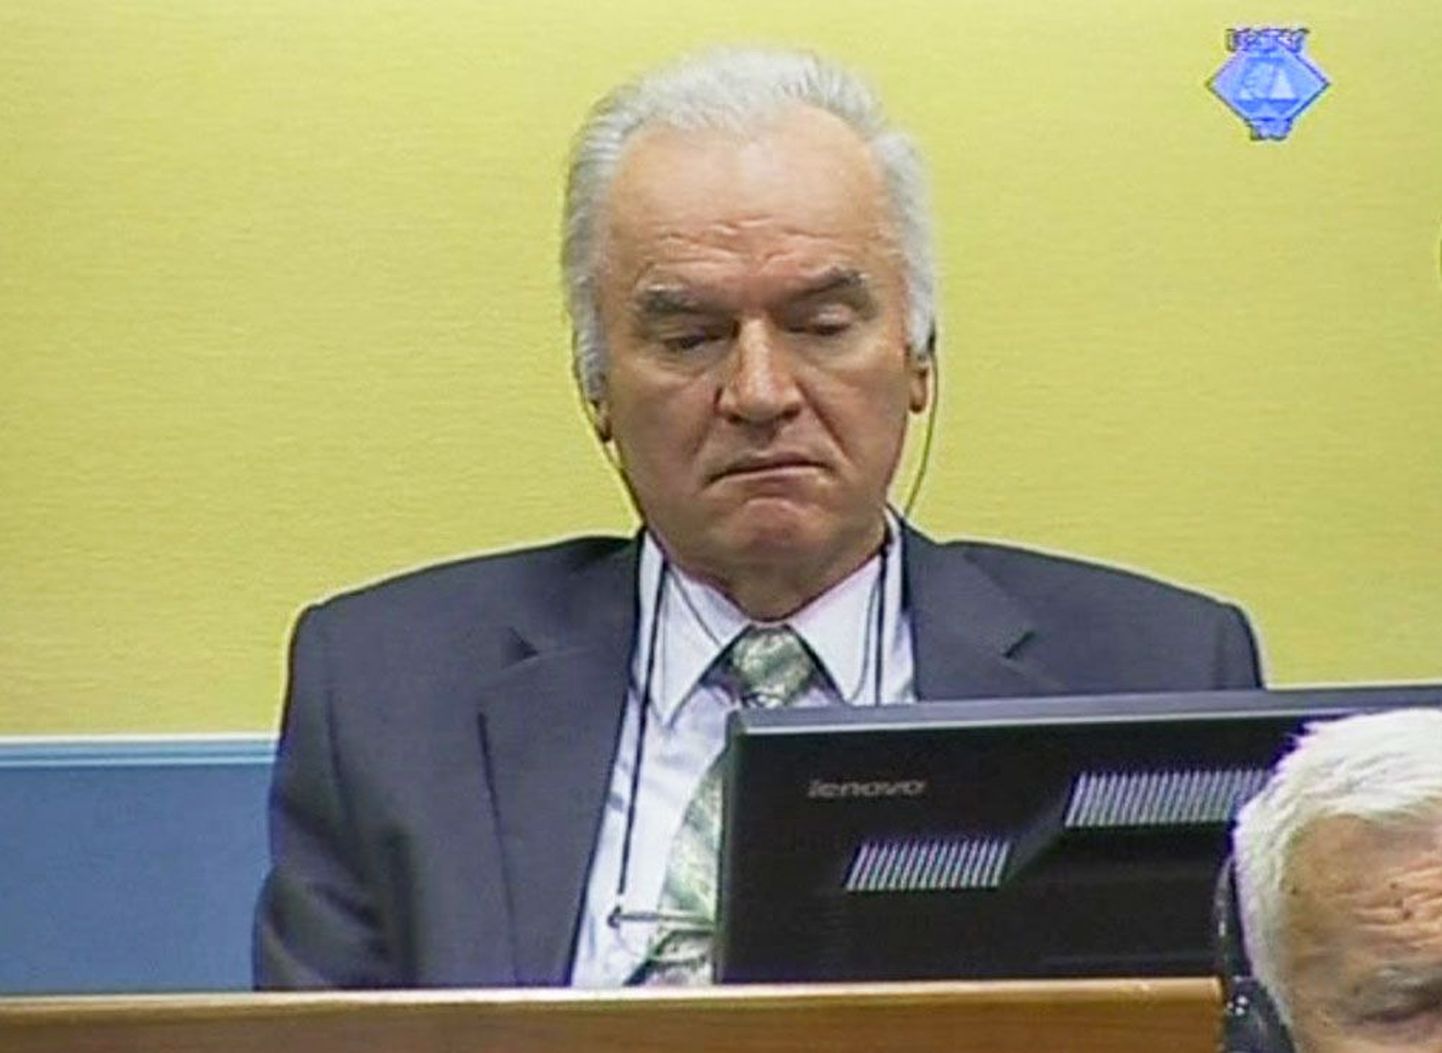 Haagi kriminaaltribunali videokaadril on näha sõjakuritegudes süüdistatavat Ratko Mladićit eile kohtus.